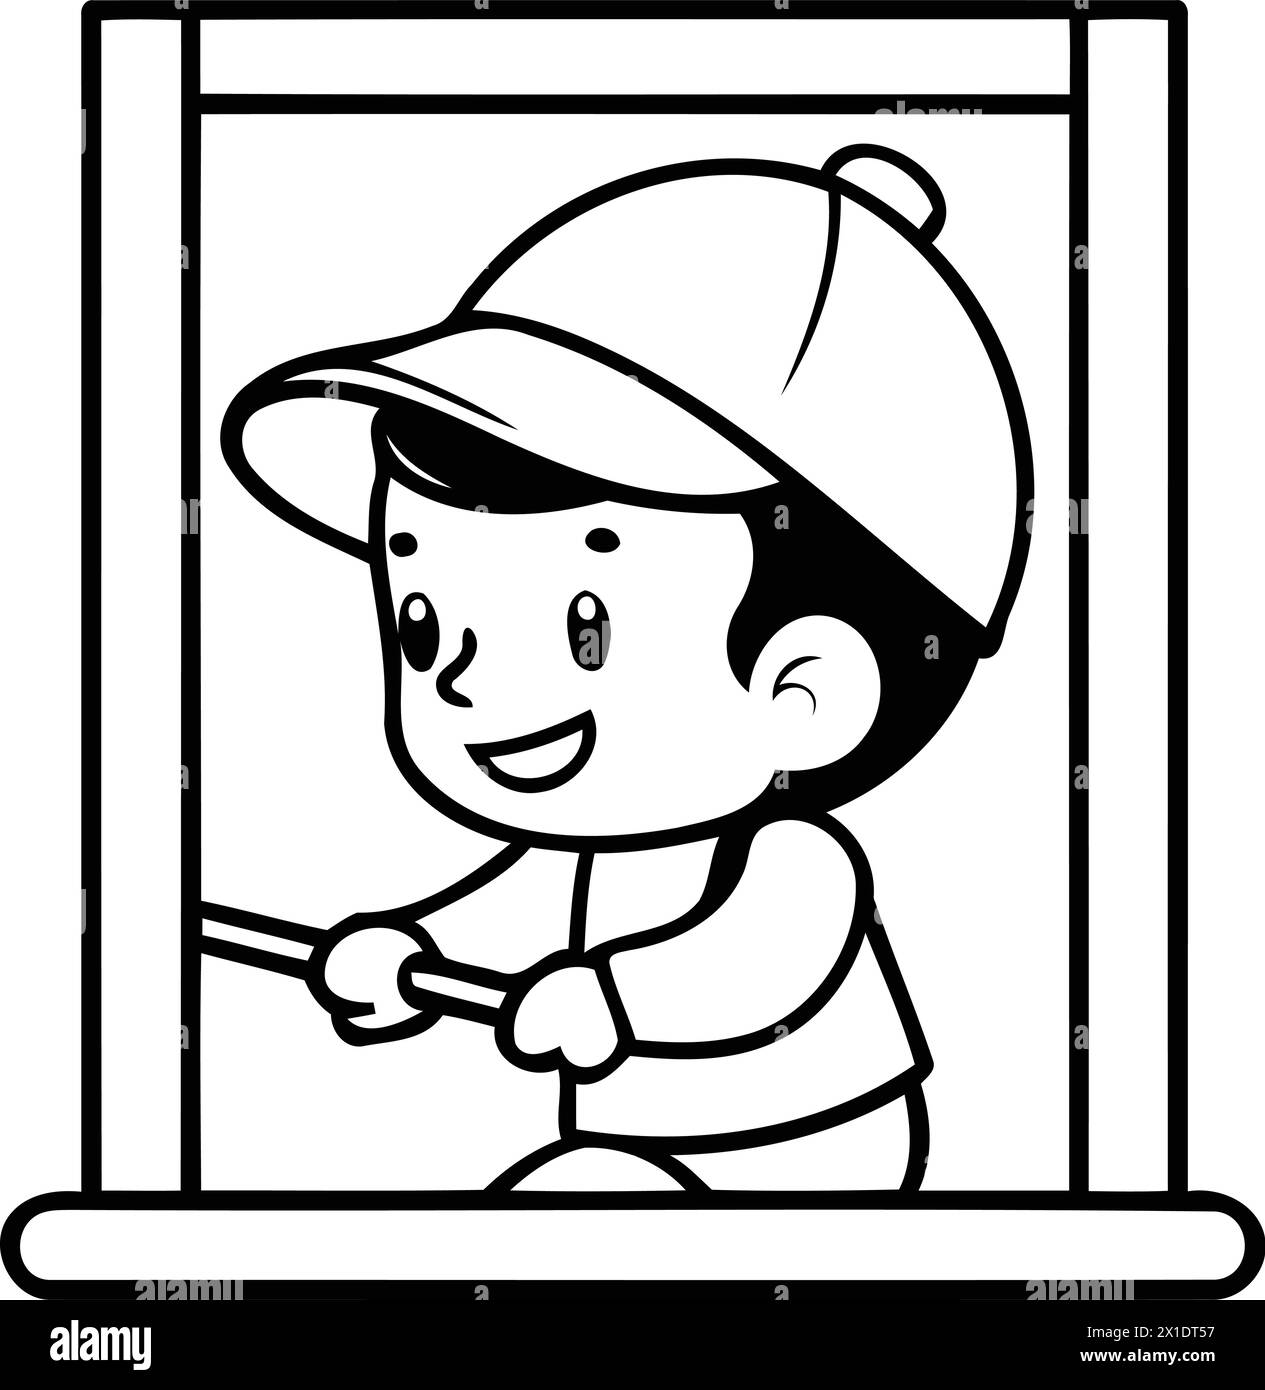 Süßer Junge mit Helm und Handschuhen, der durch das Fenster schaut. Illustration des flachen Vektors. Stock Vektor